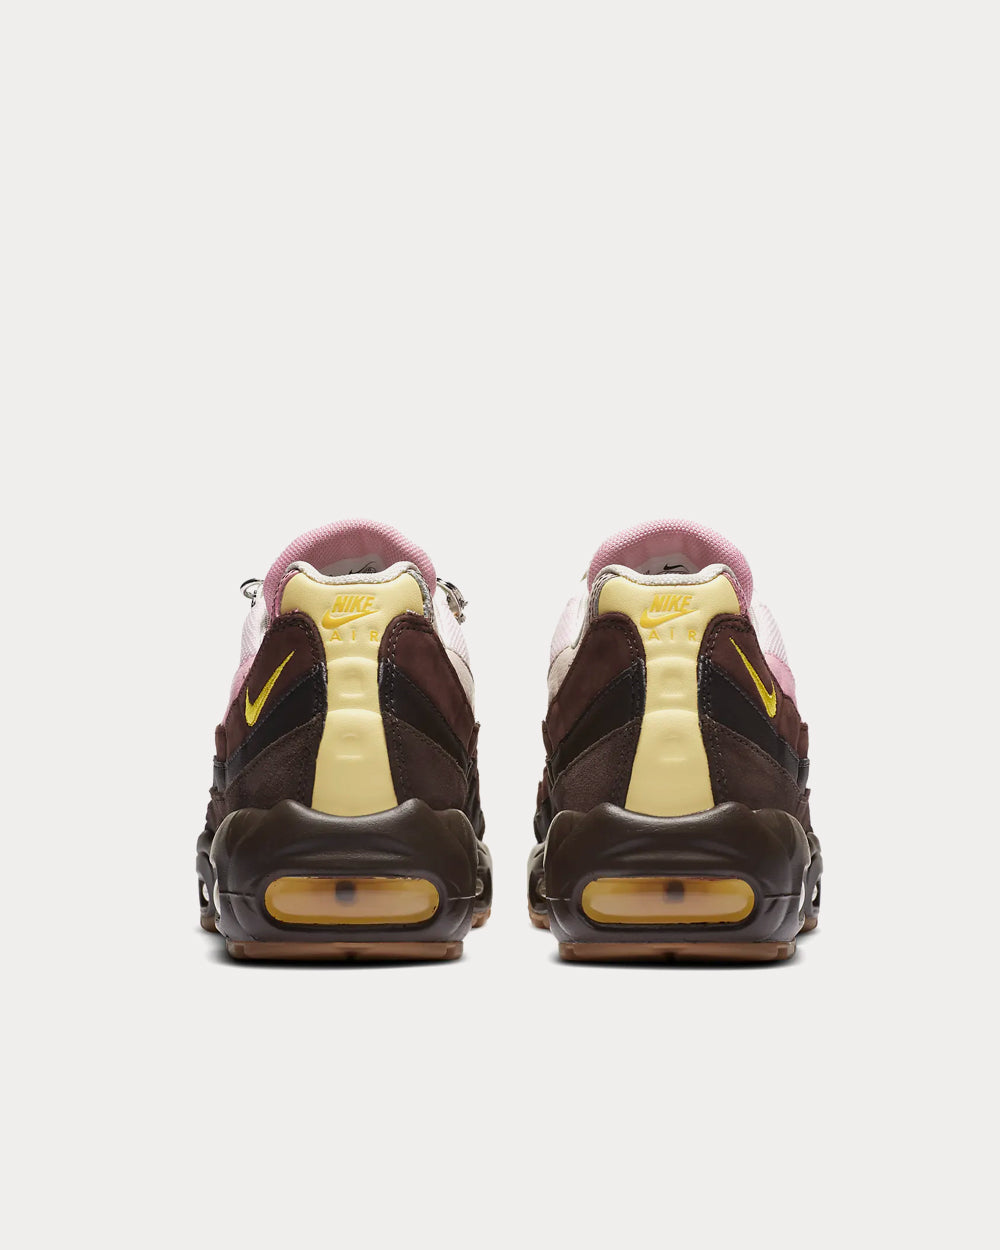 Nike - Air Max 95 Velvet Brown / Light British Tan / Baroque Brown / Opti Yellow Low Top Sneakers